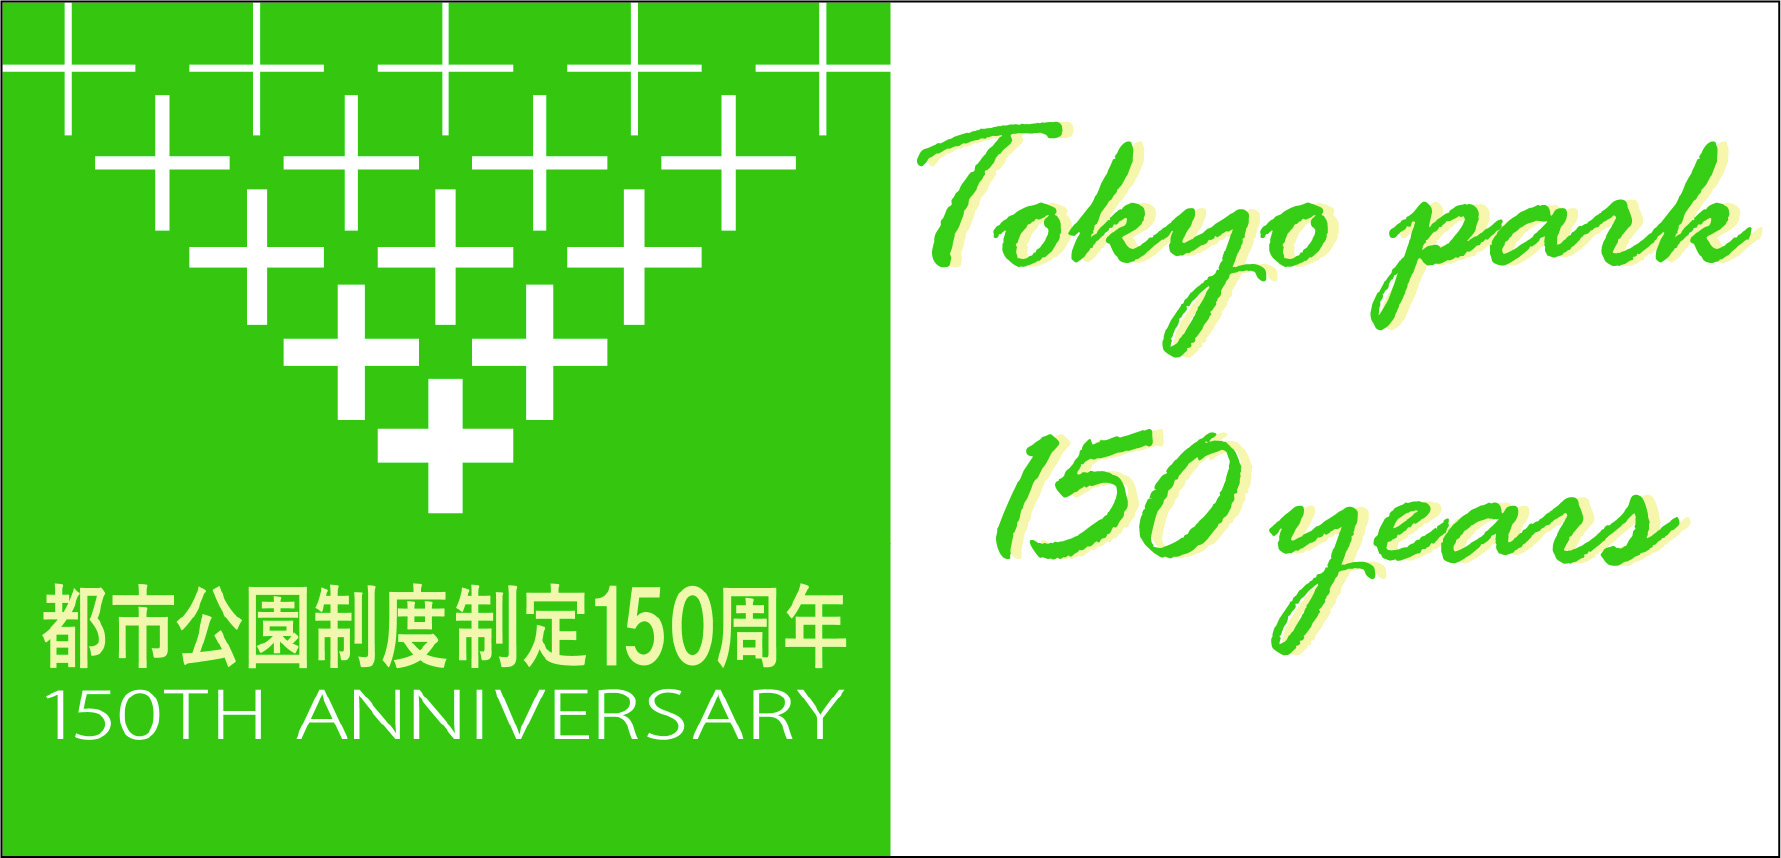 東京都都市公園制度制定150周年記念冠事業